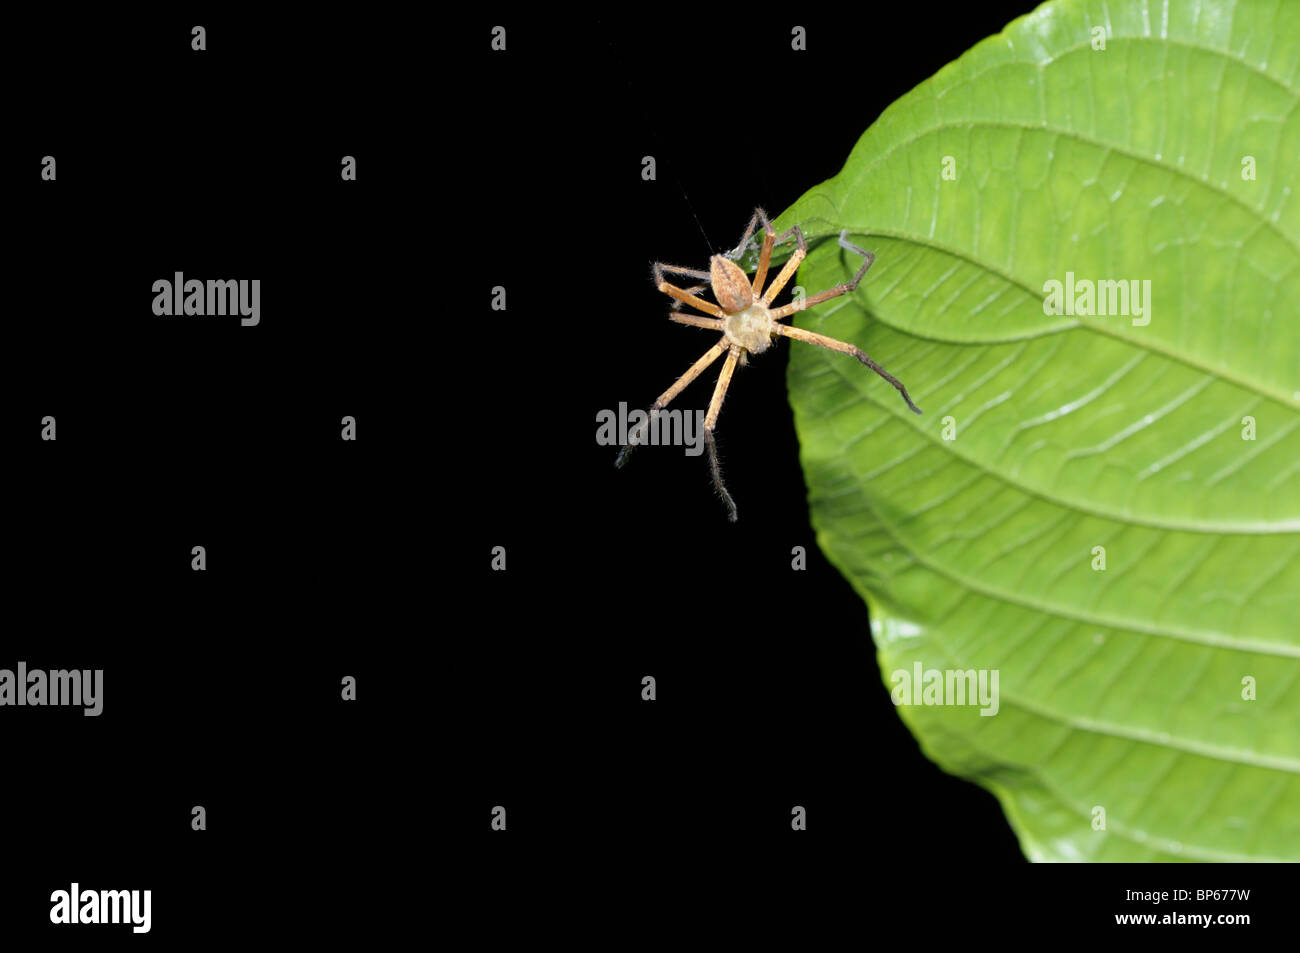 Elle-même à partir de la descente d'araignées tropicales au-dessus des arbres à l'aide d'un fil de soie, rainforest, Chilamate, Costa Rica Banque D'Images